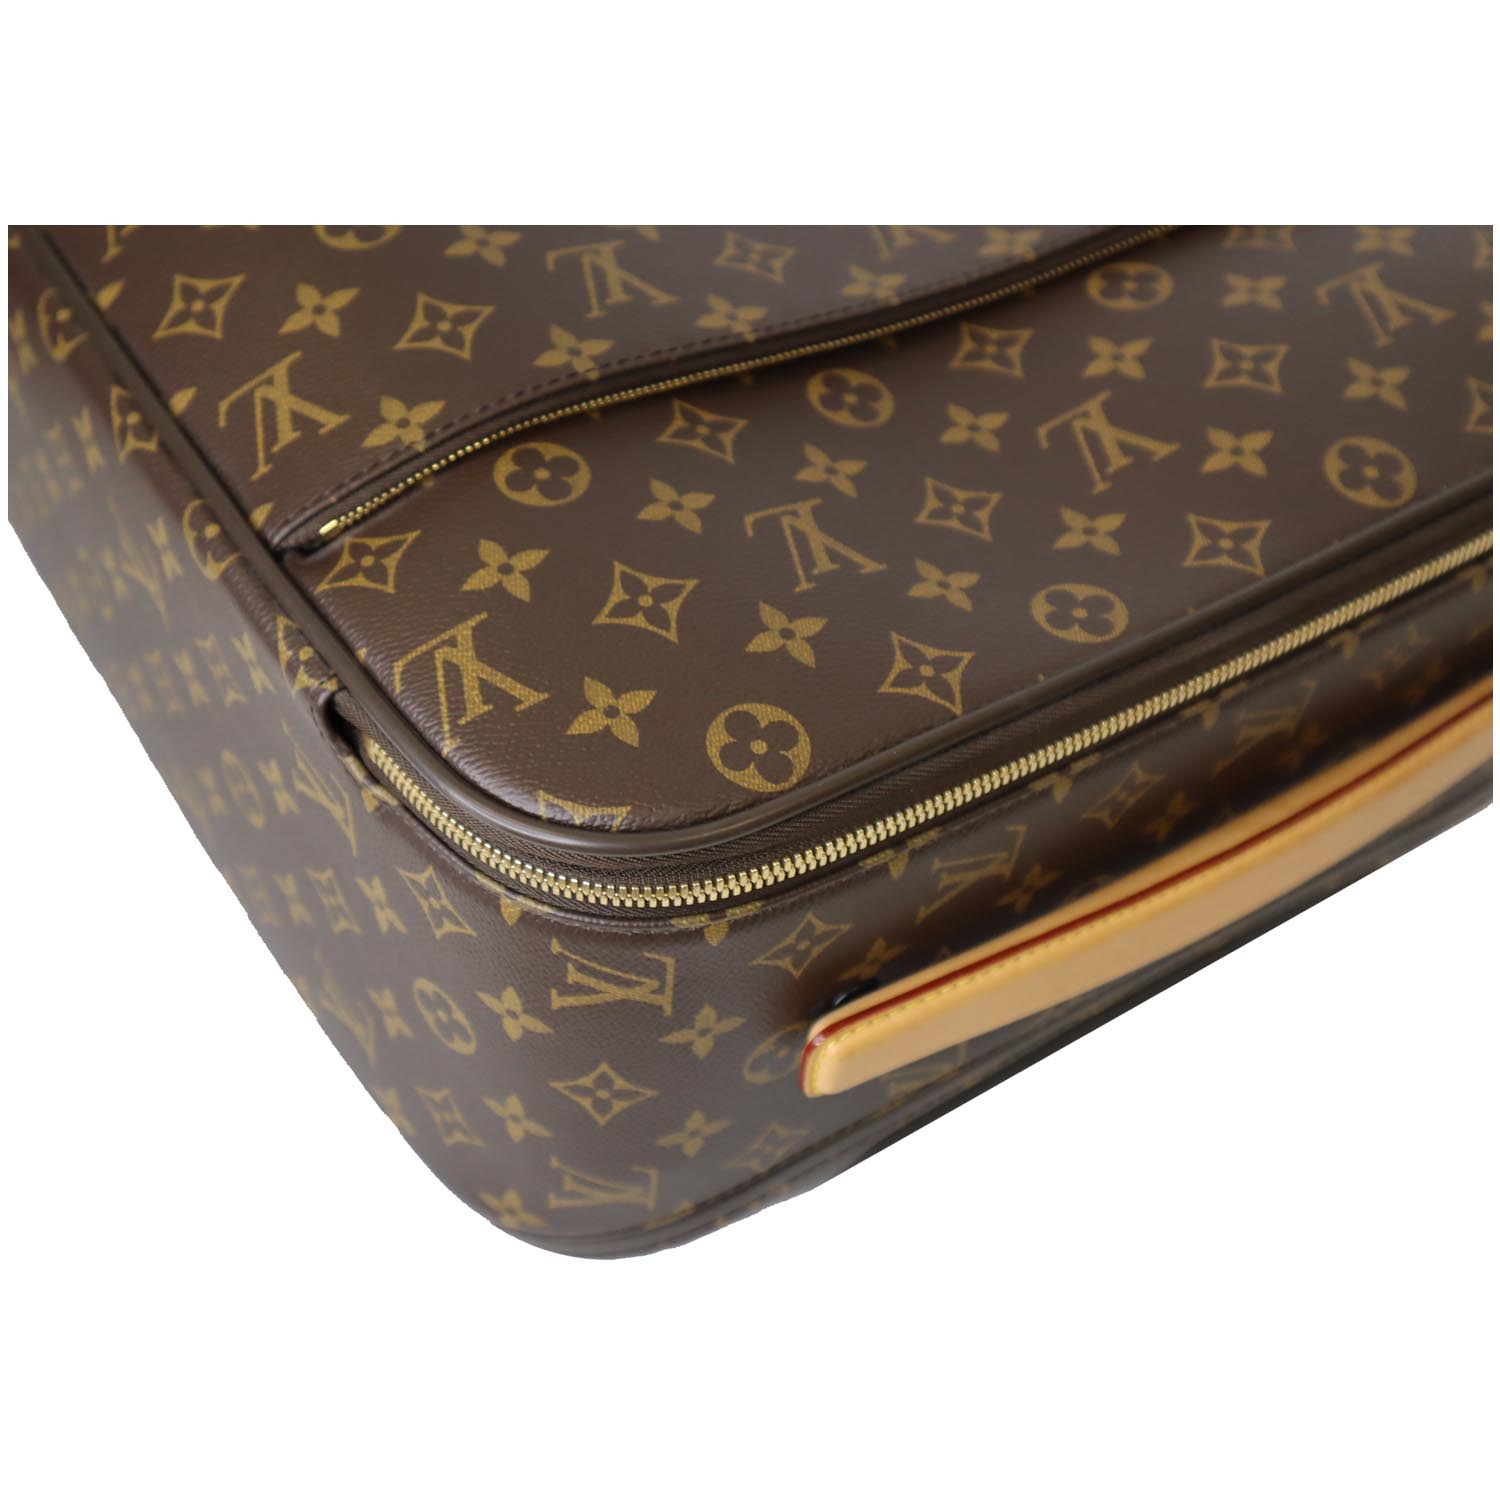 Louis Vuitton Pegase 55 Rolling Suitcase Graphite51.063,00 kr